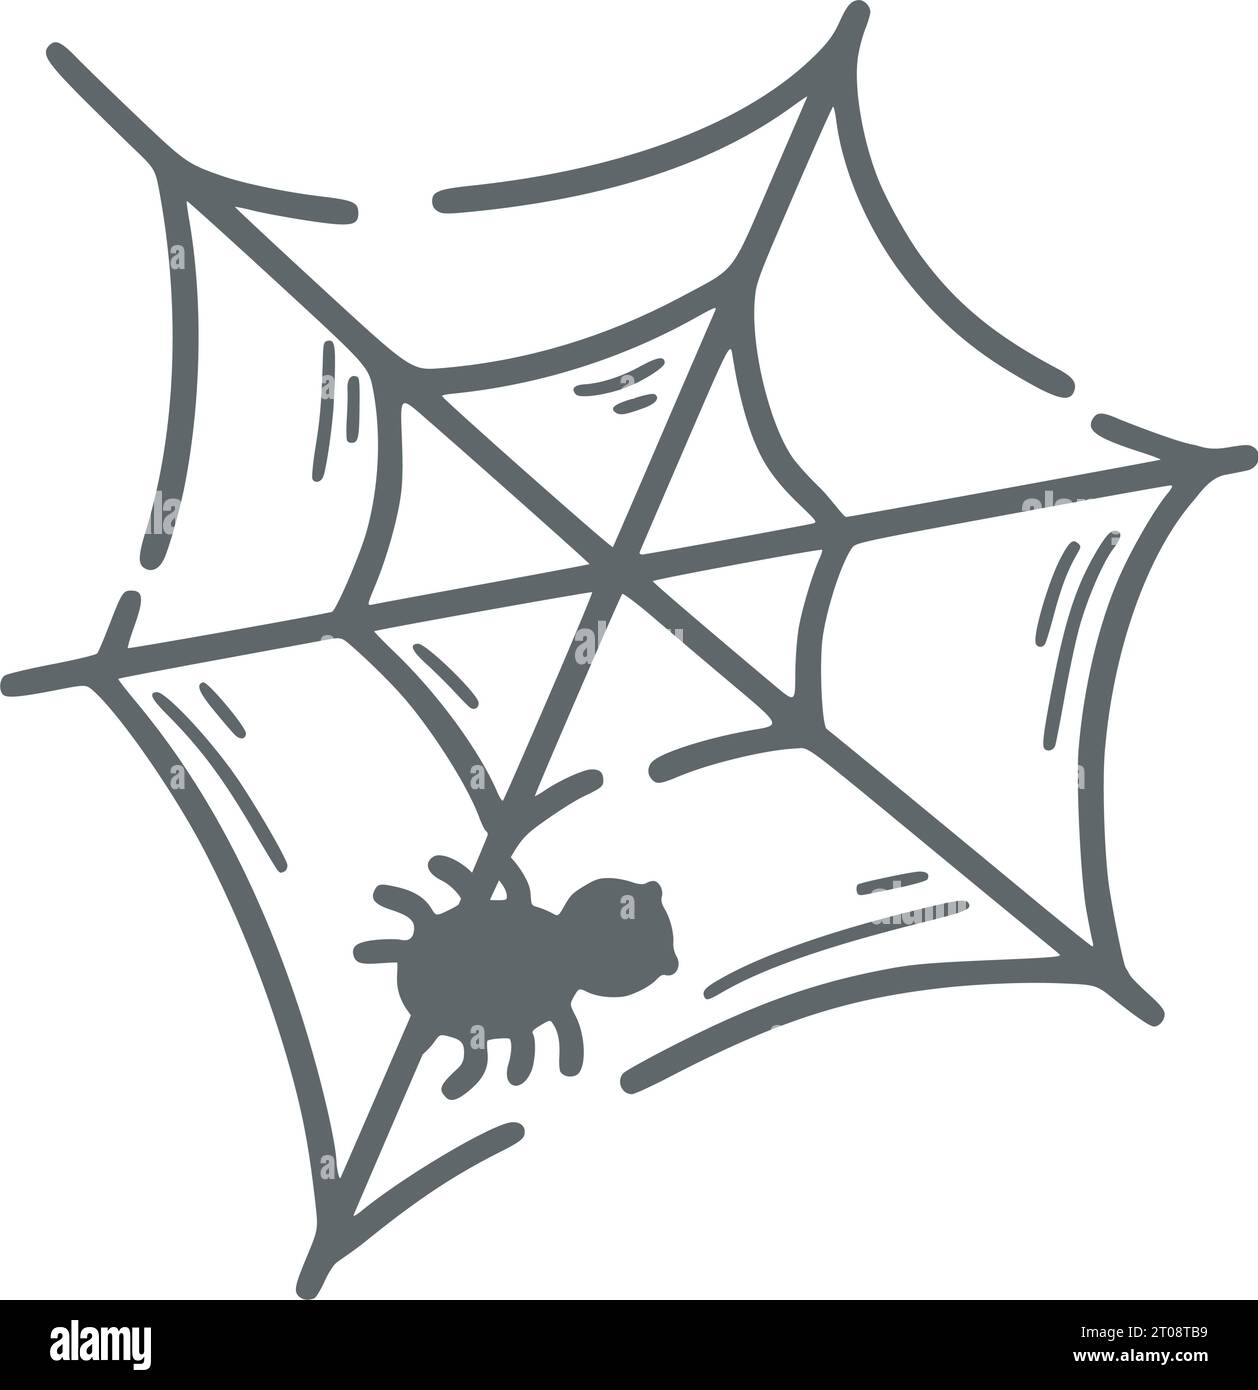 Illustrazione del doodle isolato Spider Web. Disegno clip cobweb con schizzo a linea semplice. Elemento di design Halloween disegnato a mano, vettoriale Illustrazione Vettoriale